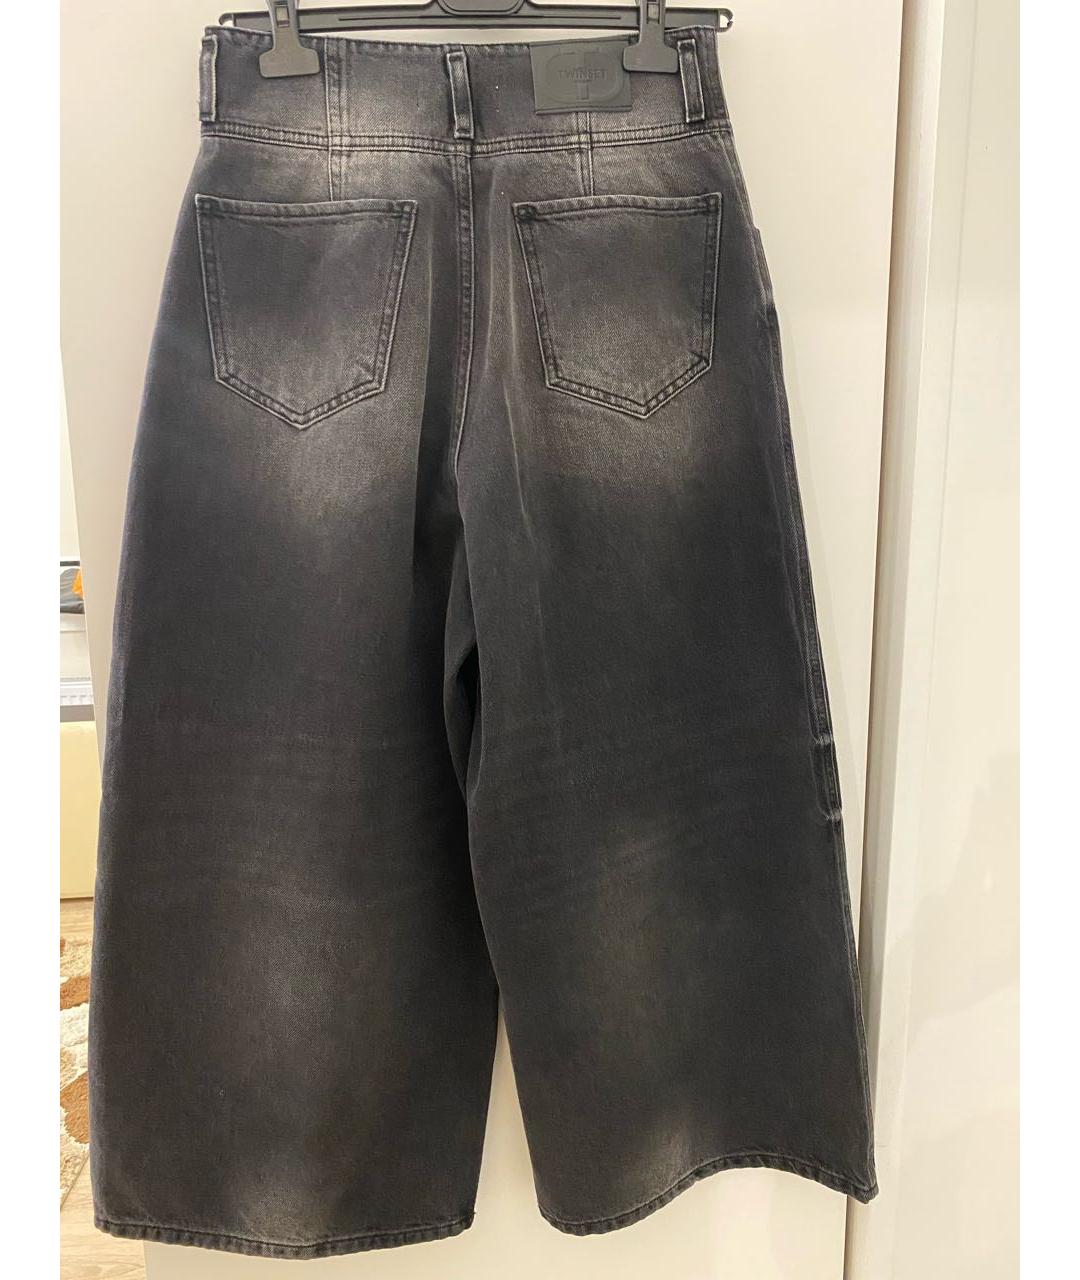 TWIN-SET Мульти хлопко-полиэстеровые джинсы клеш, фото 2